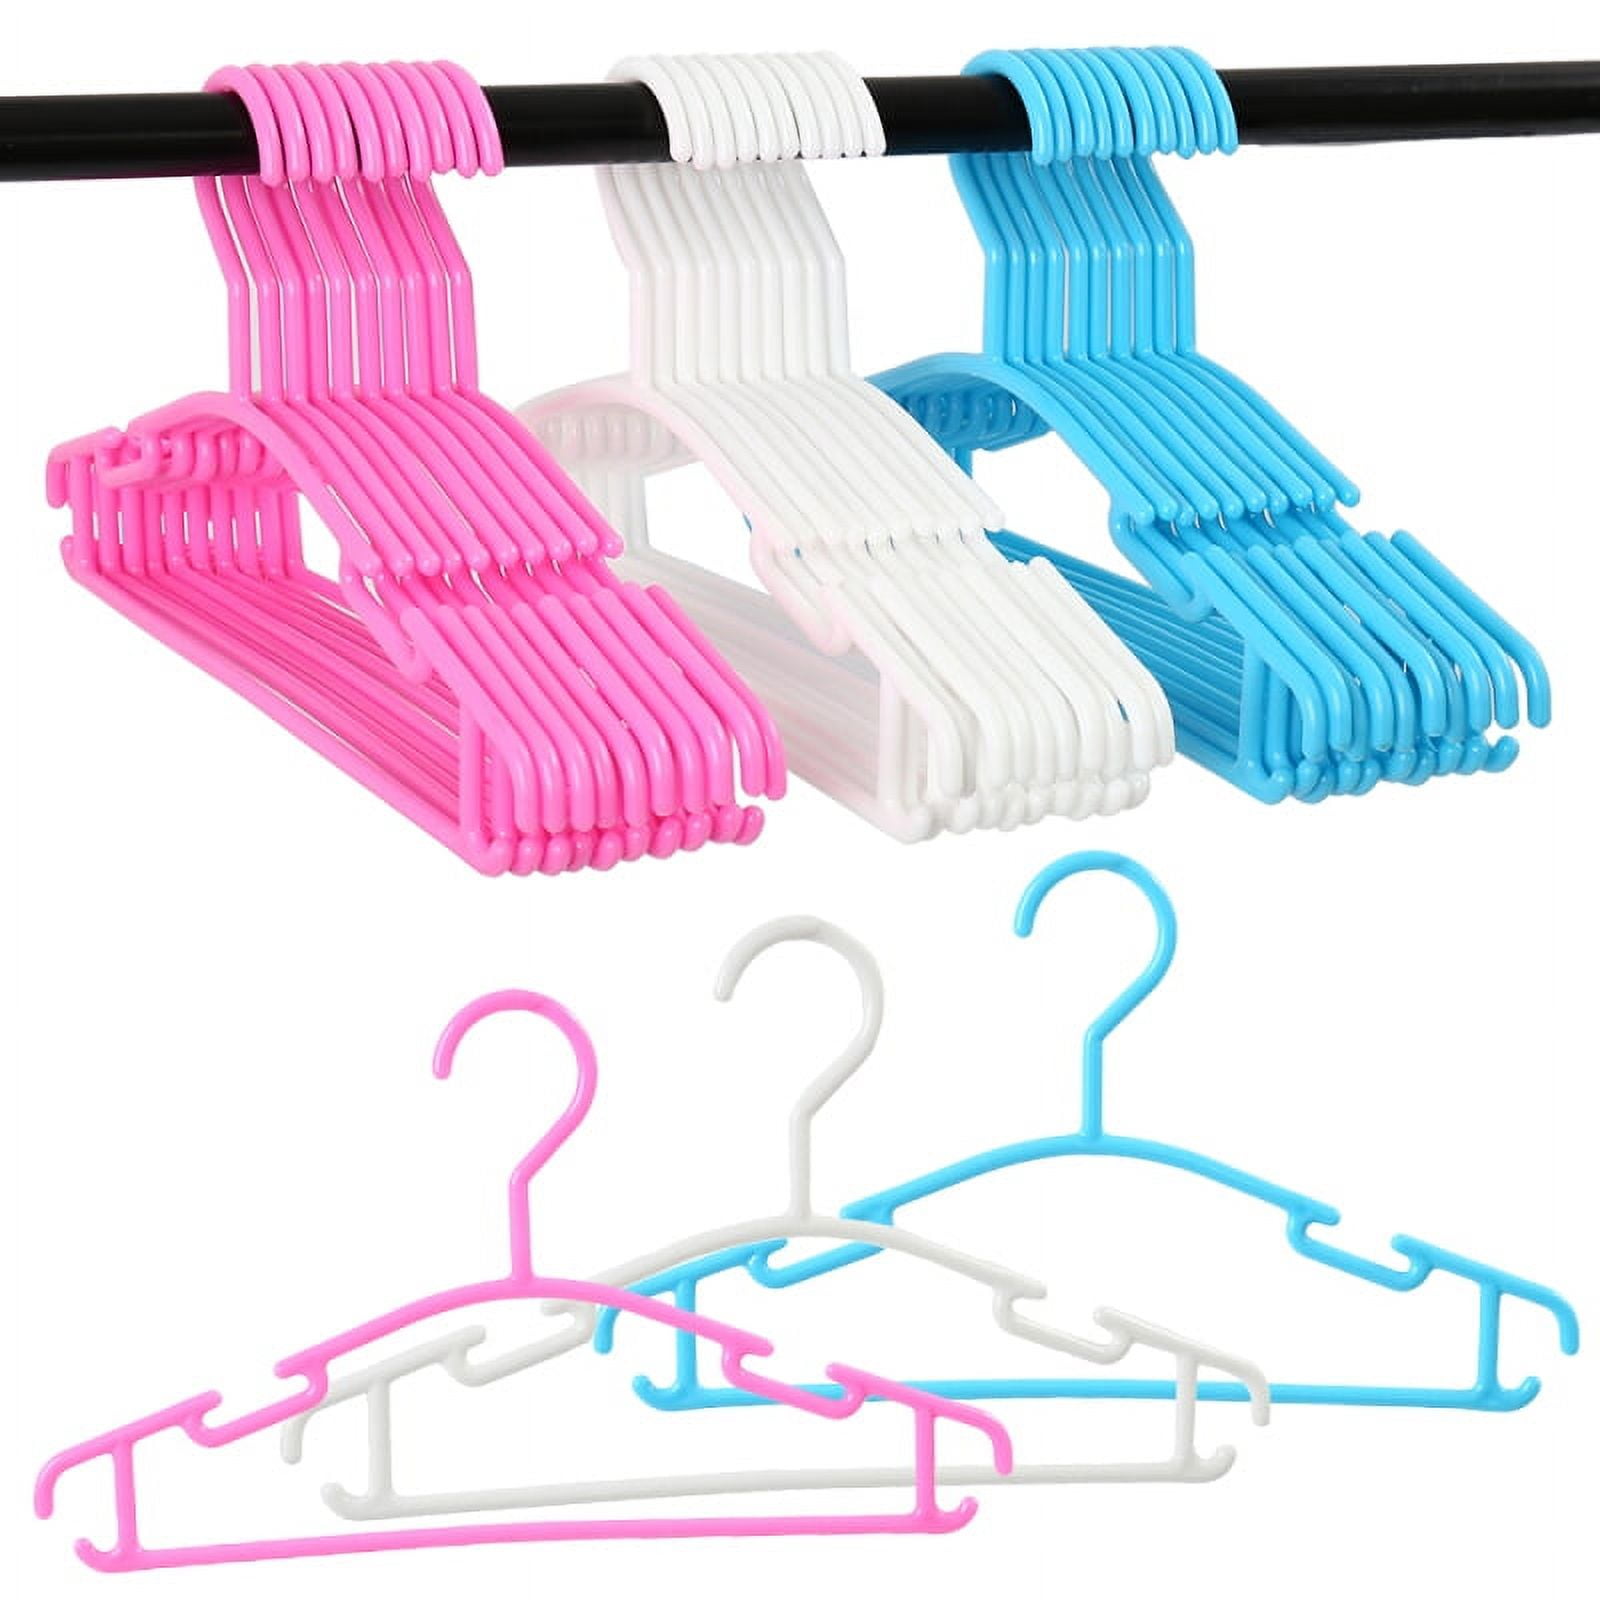 Mr. Pen- Plastic Kids Hangers, 10 Pack, Baby Hangers, Baby Hangers for Nursery, Baby Clothes Hangers, Baby Hangers for Closet, Kid Hangers, Kids